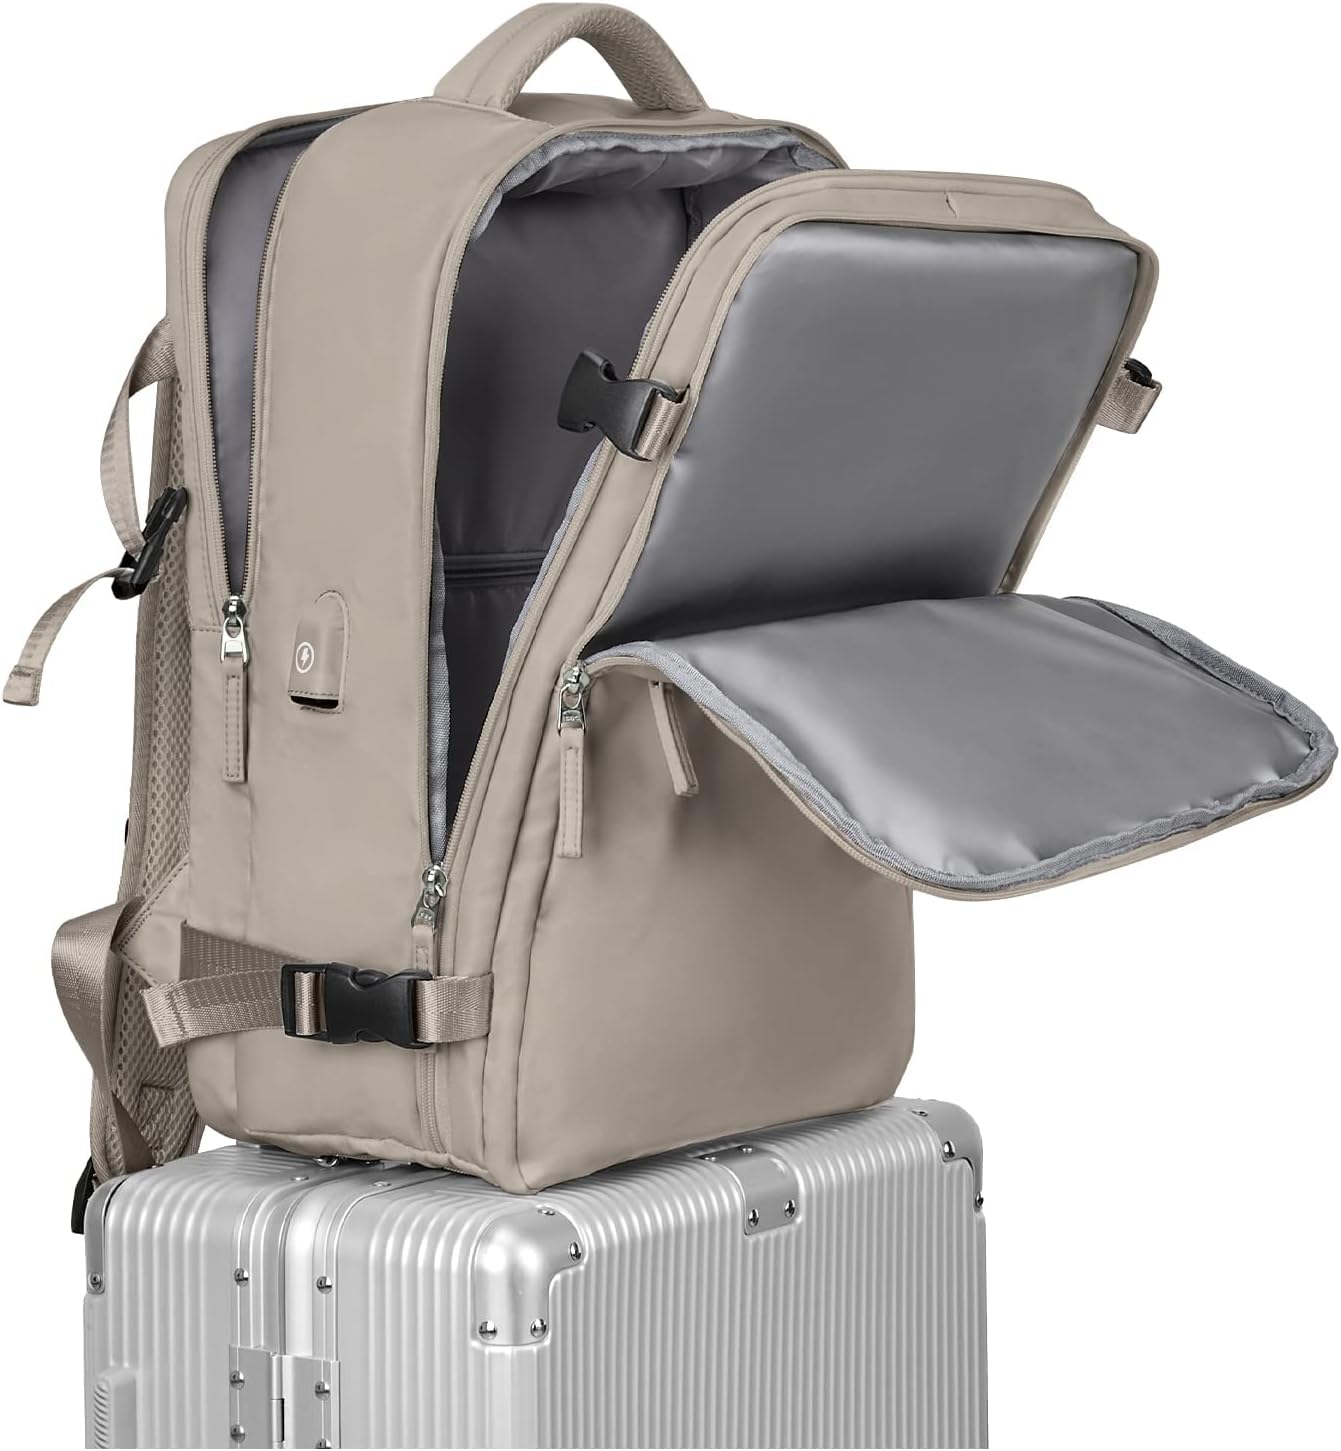 送料無料bergsalz Brown Large Travel Backpack Essentials For Women Men Airline Approved Personal Item Travel Bag Carry On